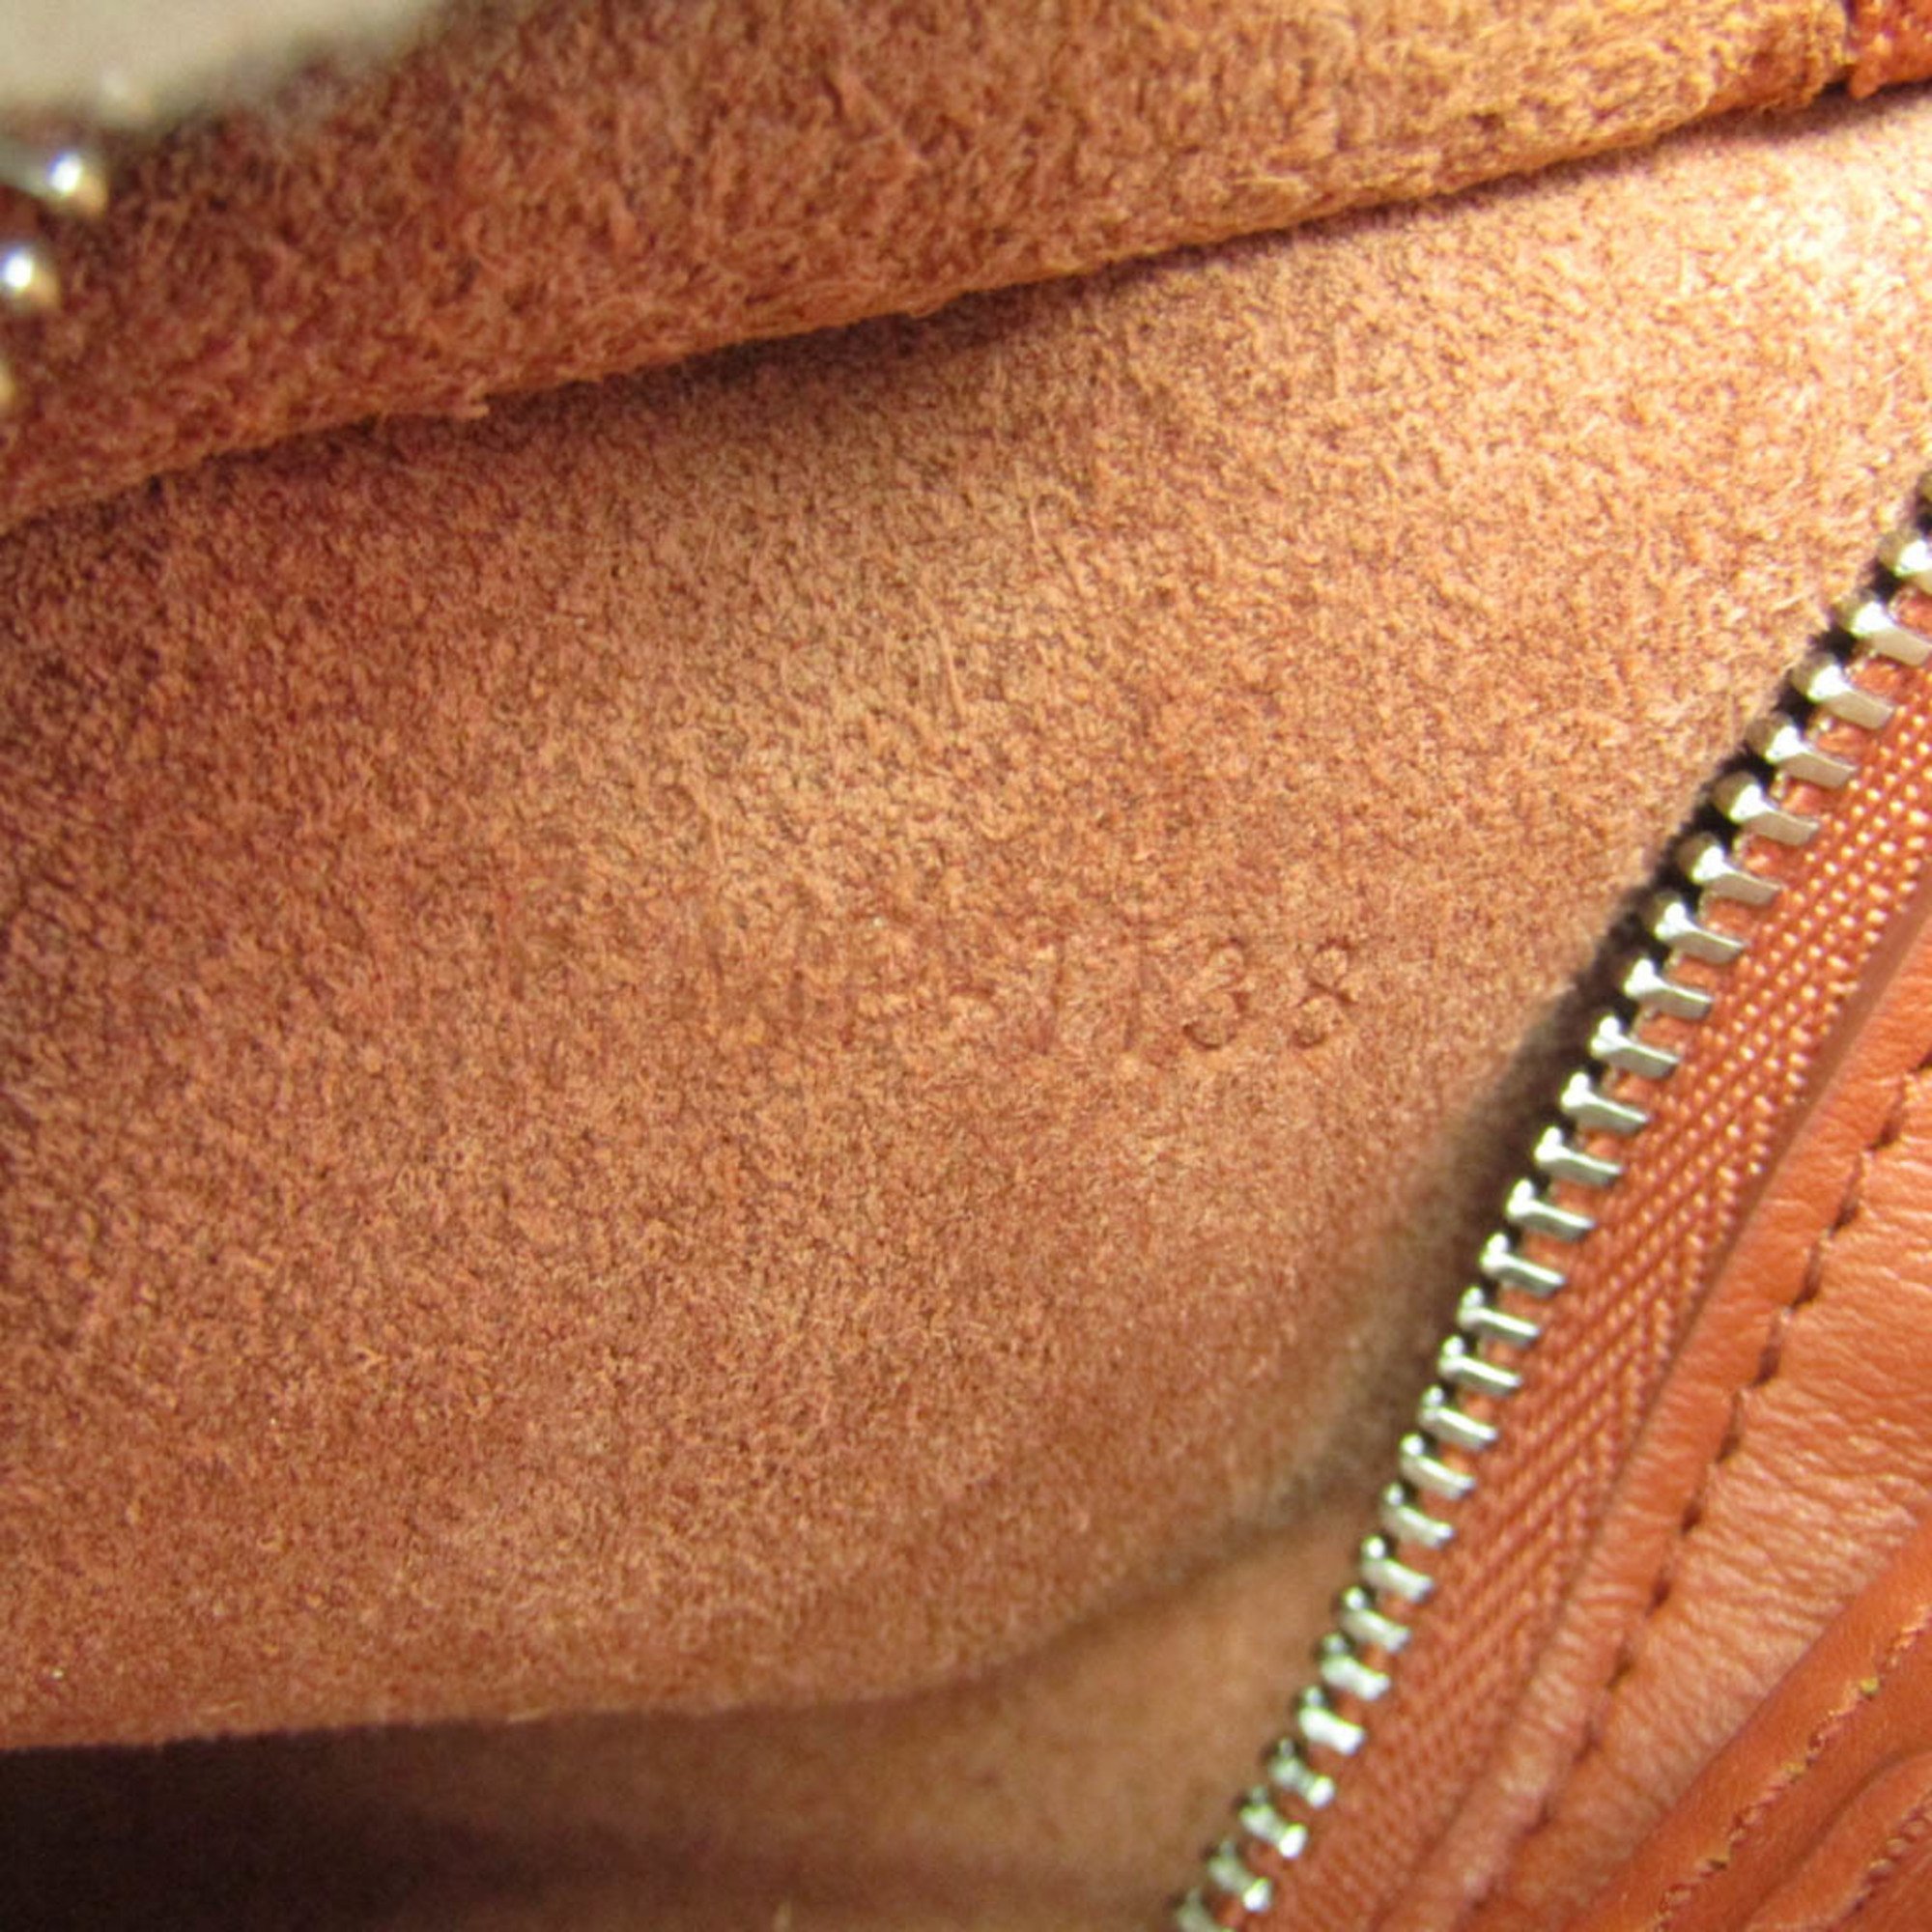 Celine Small Long Strap 183313A4T Women's Leather Handbag,Shoulder Bag Red Brown